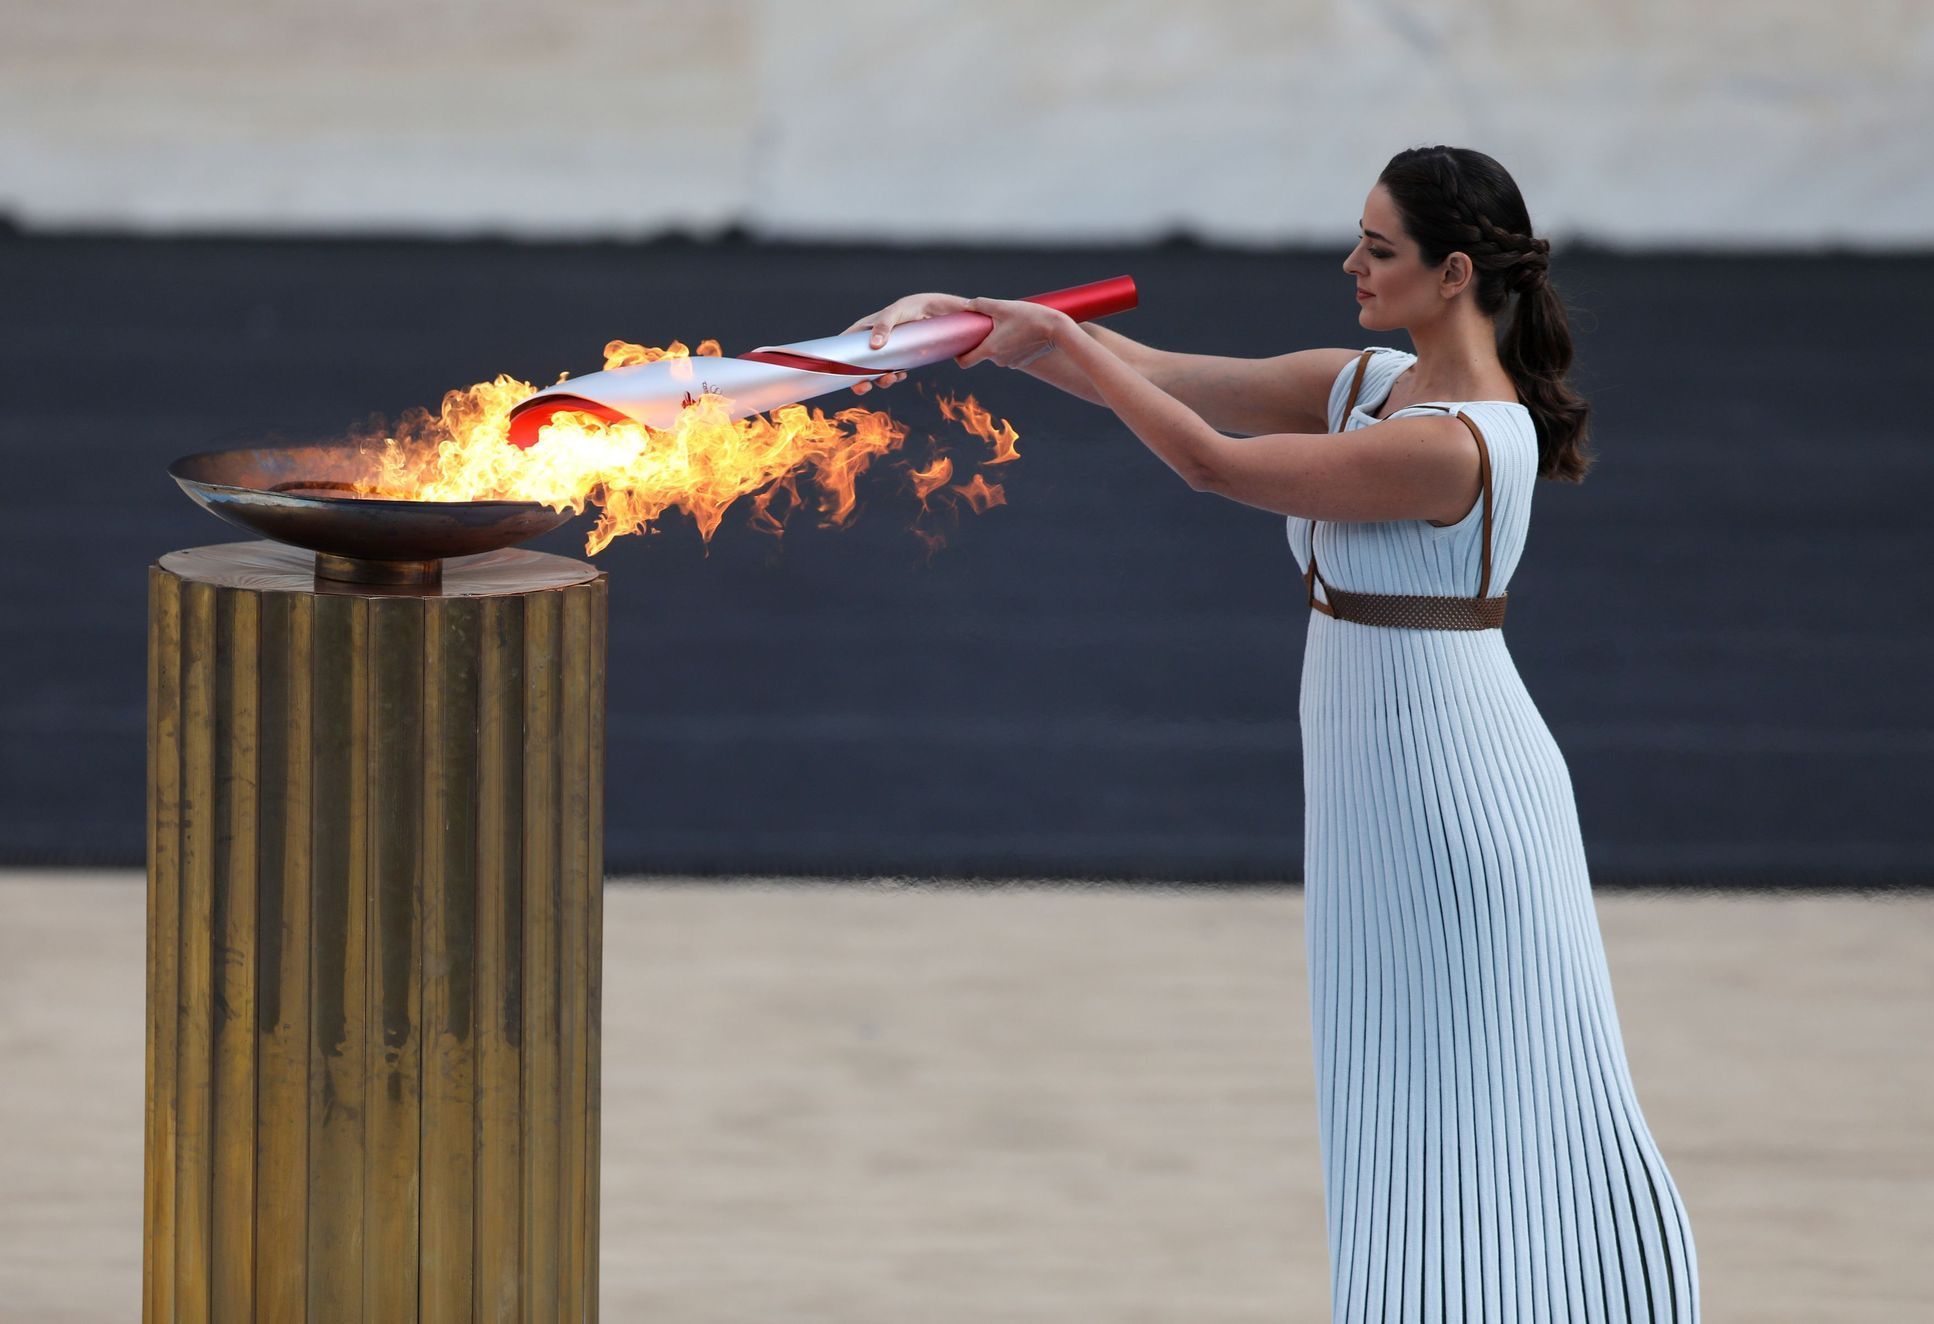 Pořadatelé zimních her v Pekingu převzali v Aténách olympijský oheň